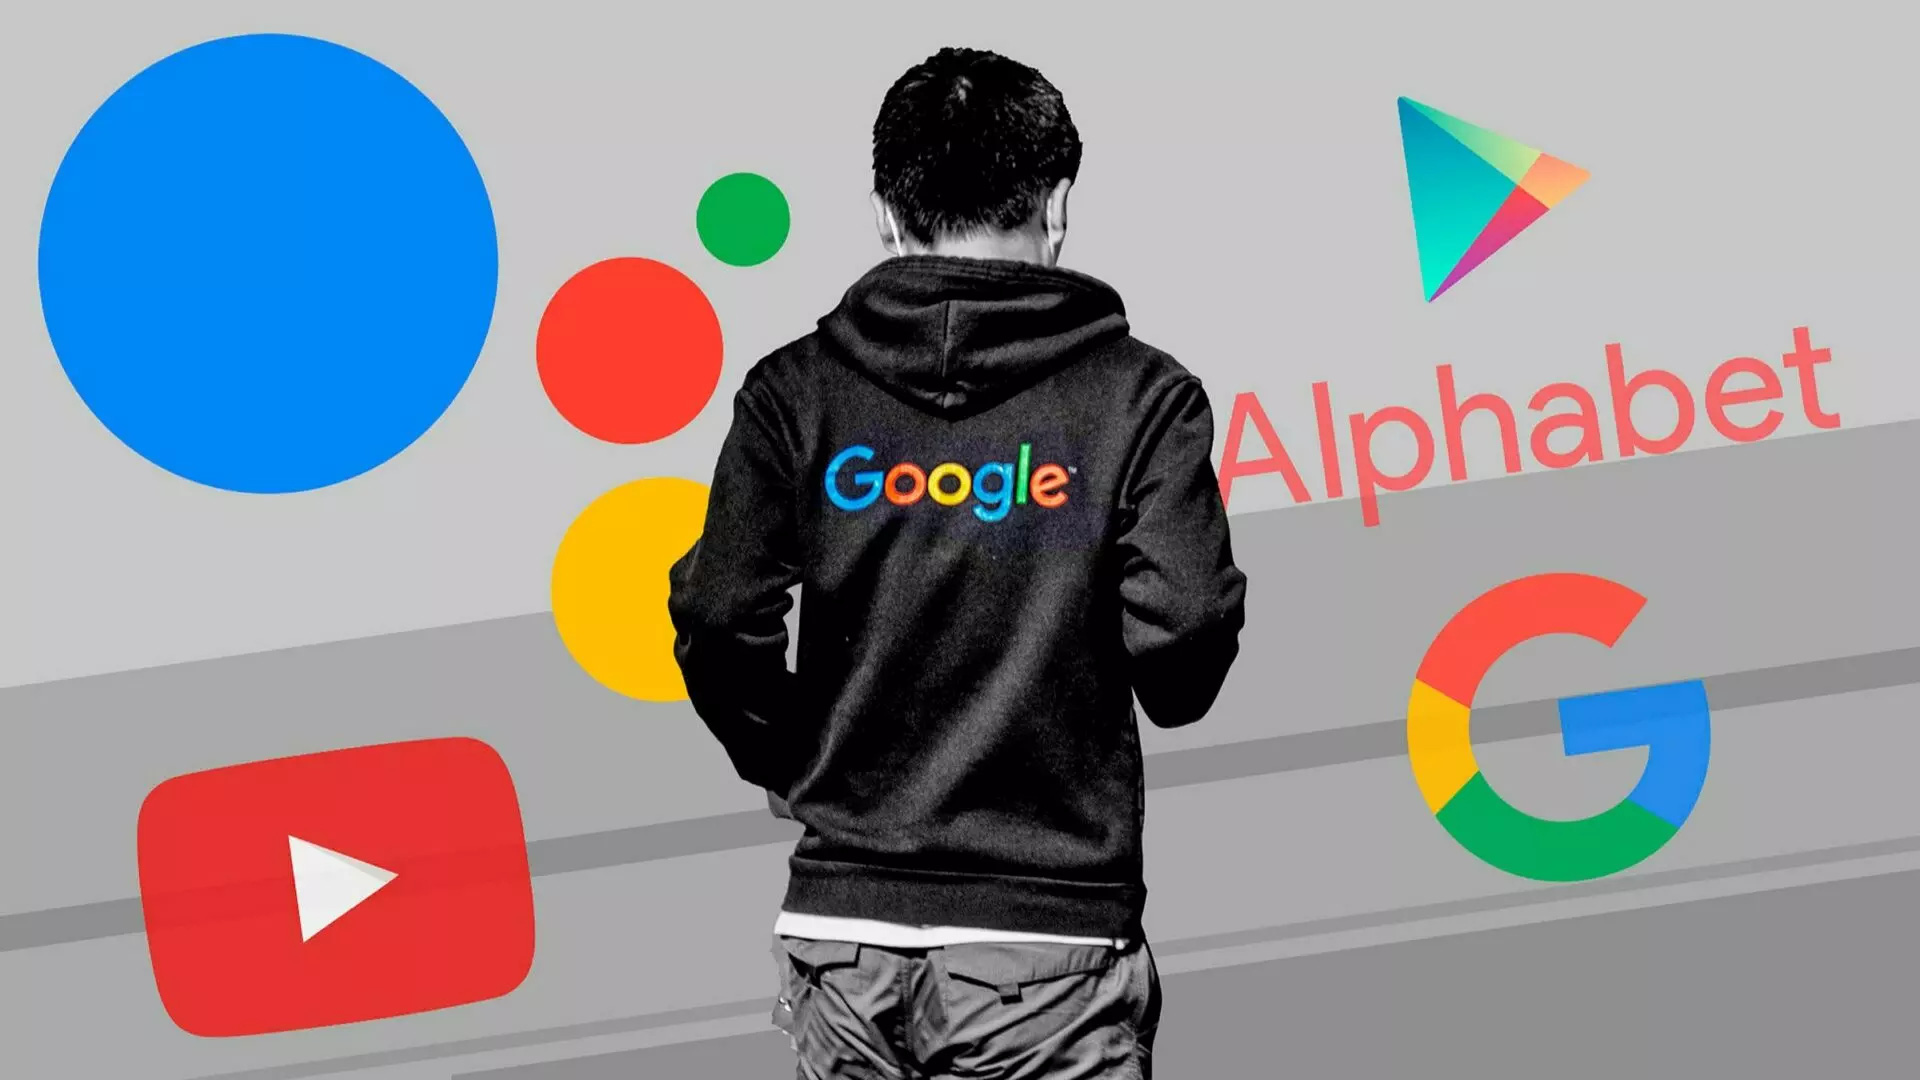 Gã khổng lồ công nghệ Alphabet đã không đạt được kỳ vọng tăng trưởng doanh thu - đặc biệt là đối với YouTube, vốn đang gặp phải sự cạnh tranh gay gắt từ TikTok. Ảnh: @AFP.